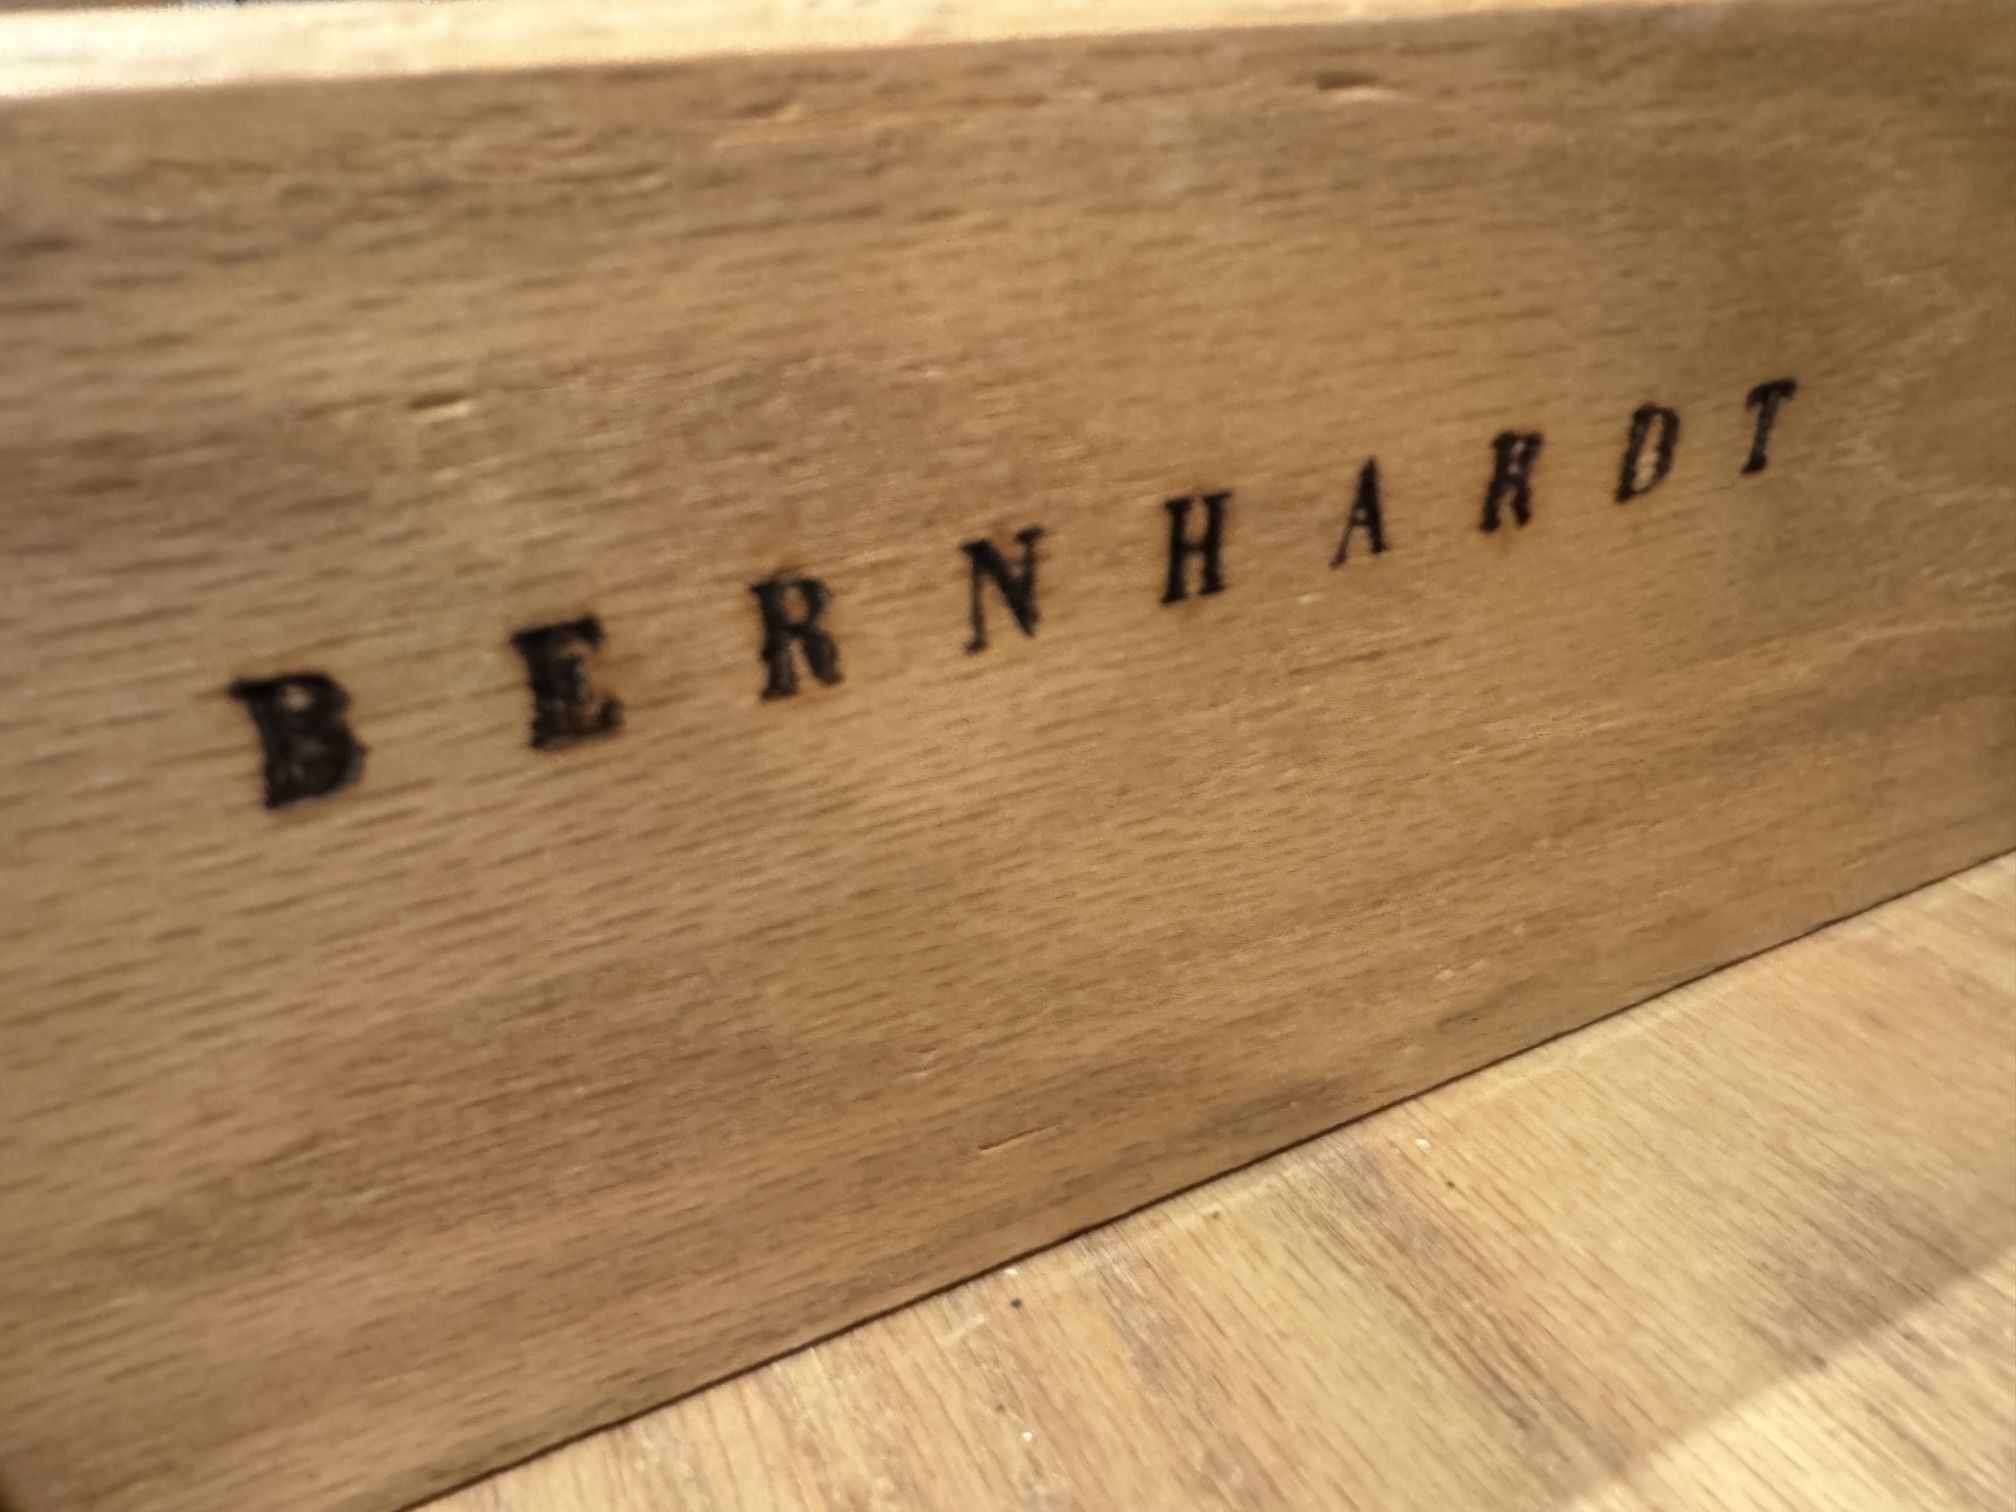 Bernhardt Bedroom Set - Dresser and Nightstands with Black Granite Tops